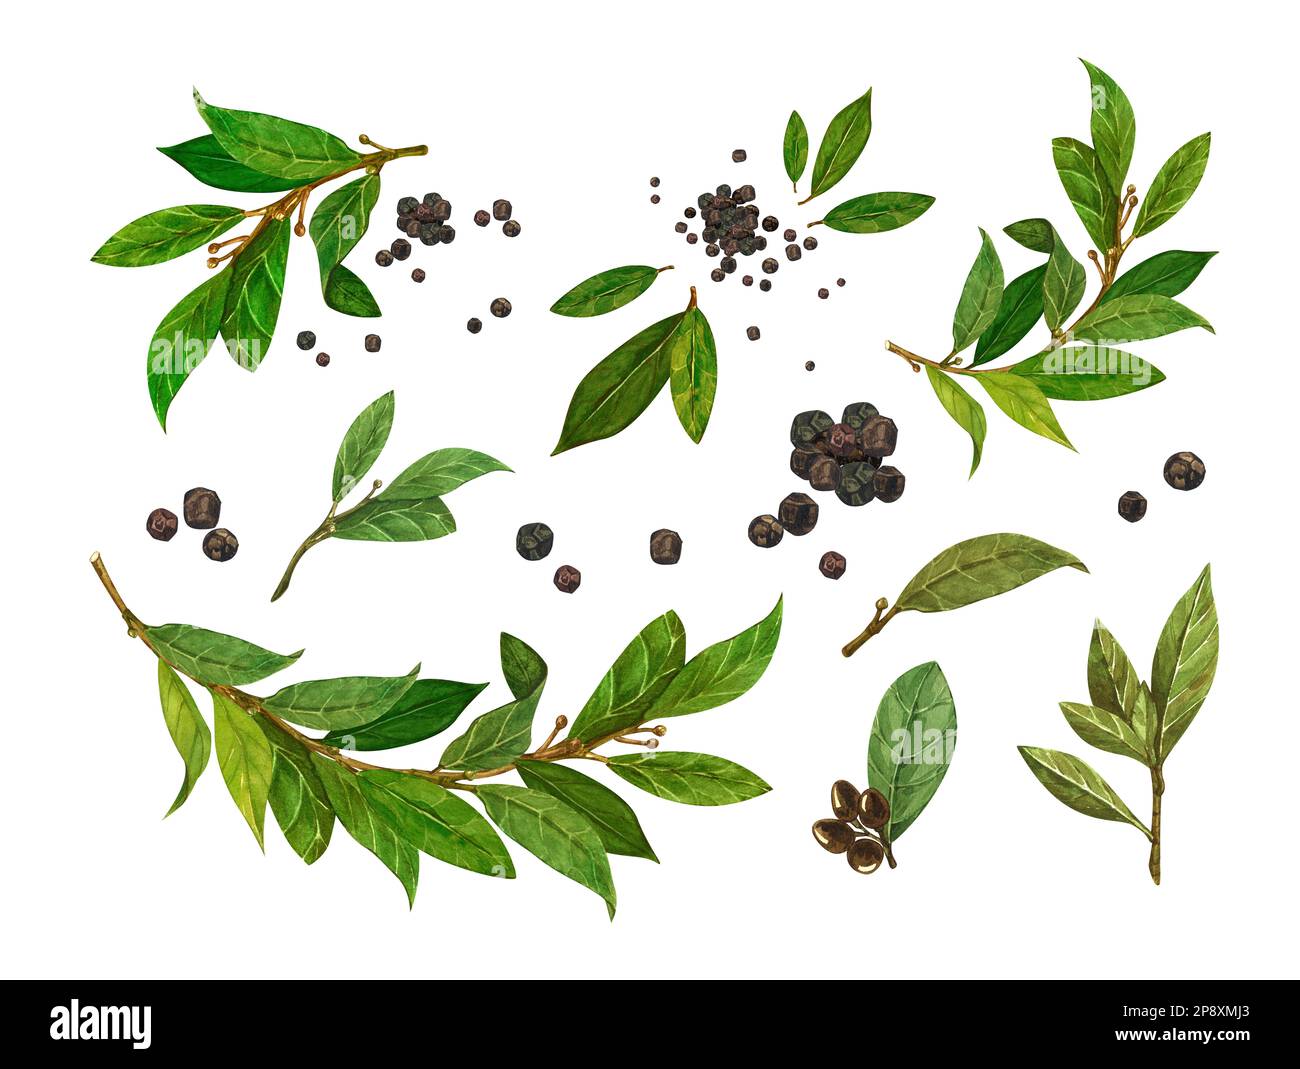 Acquerello a foglia di alloro e pepe nero. Illustrazione botanica disegnata a mano, oggetto di erbe di alloro isolato su sfondo bianco. Foto Stock